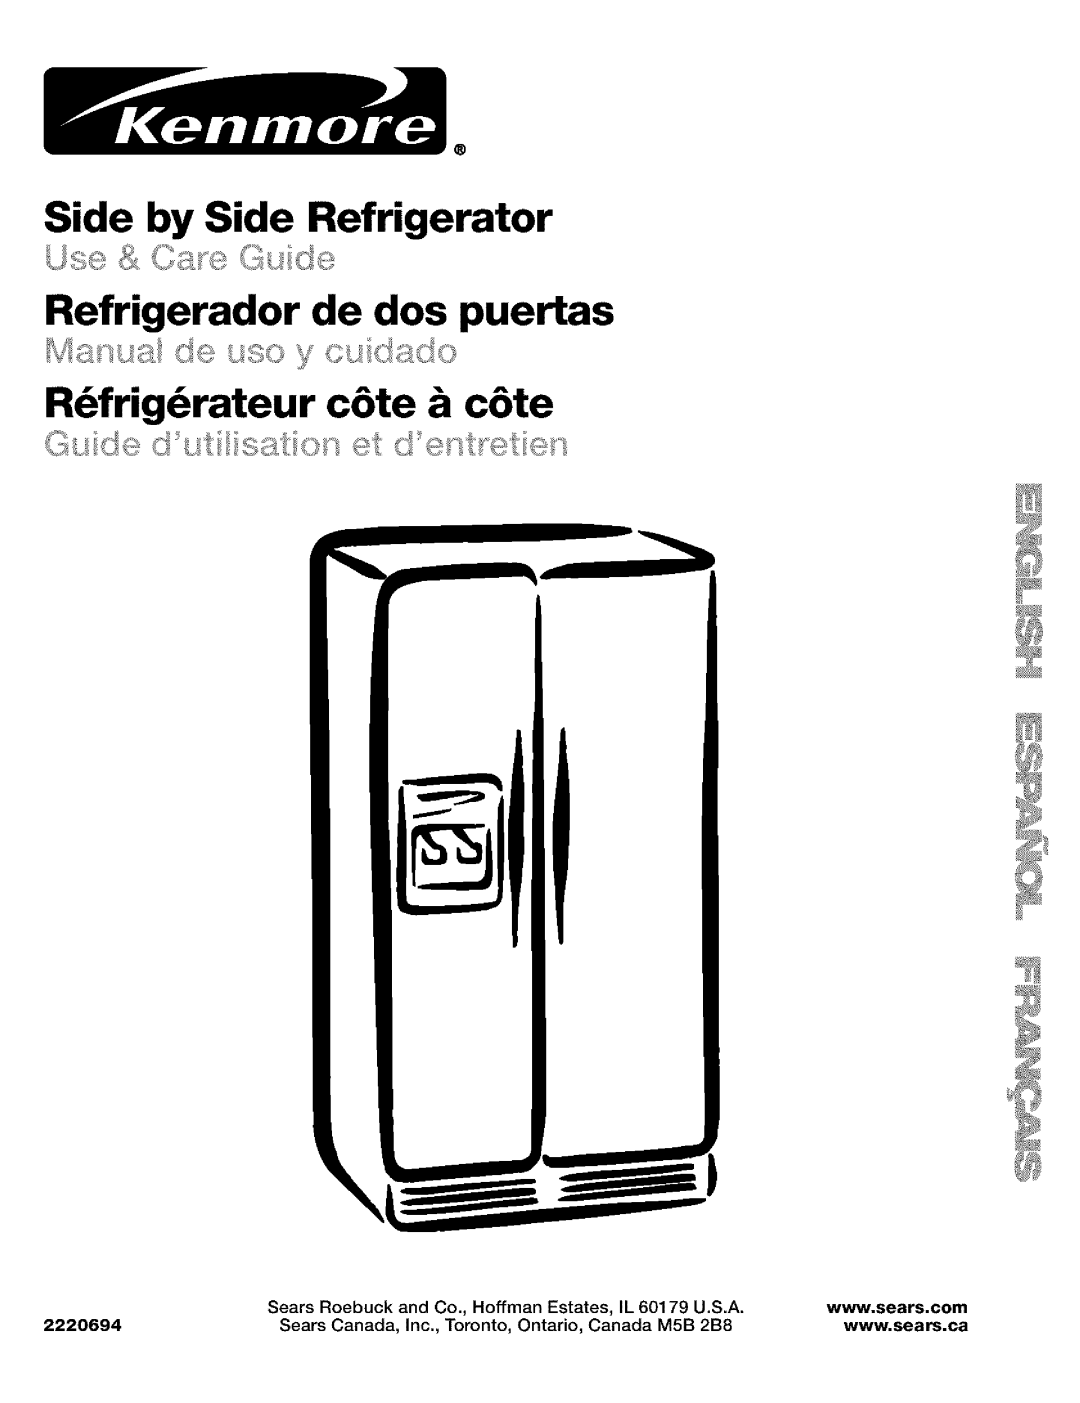 Kenmore 10653272300 manual Side by Side Refrigerator, Refrigerador de dos puertas, R_frig_rateur c6te & c6te, 2220694 